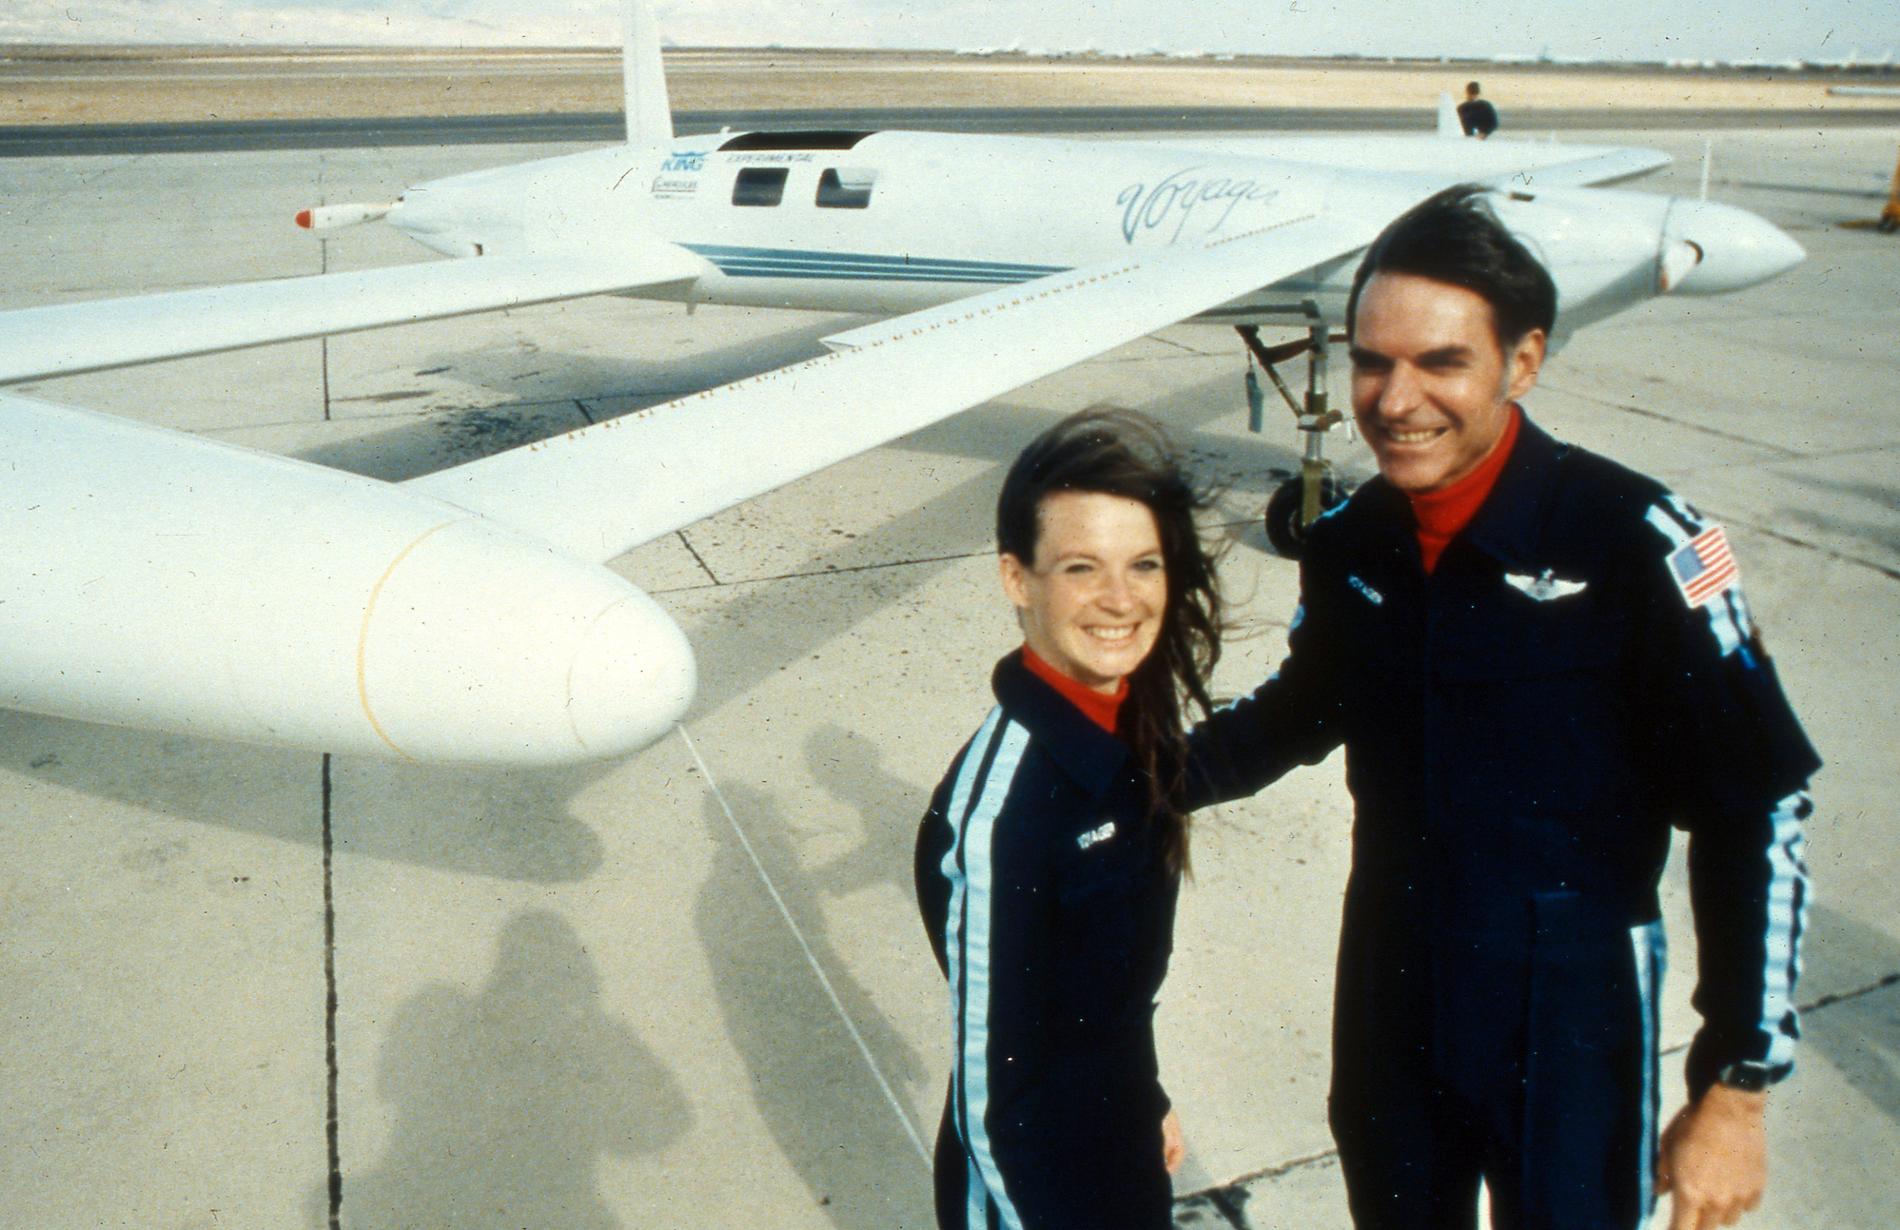 Amerikanerna Dick Rutan och copiloten Jeana Yeager satte rekord när de 1986 flög jorden runt på nio dagar utan att mellanlanda eller tanka. Rutan har nu gått bort, 85 år gammal. Arkivbild från en testflygning 1985.